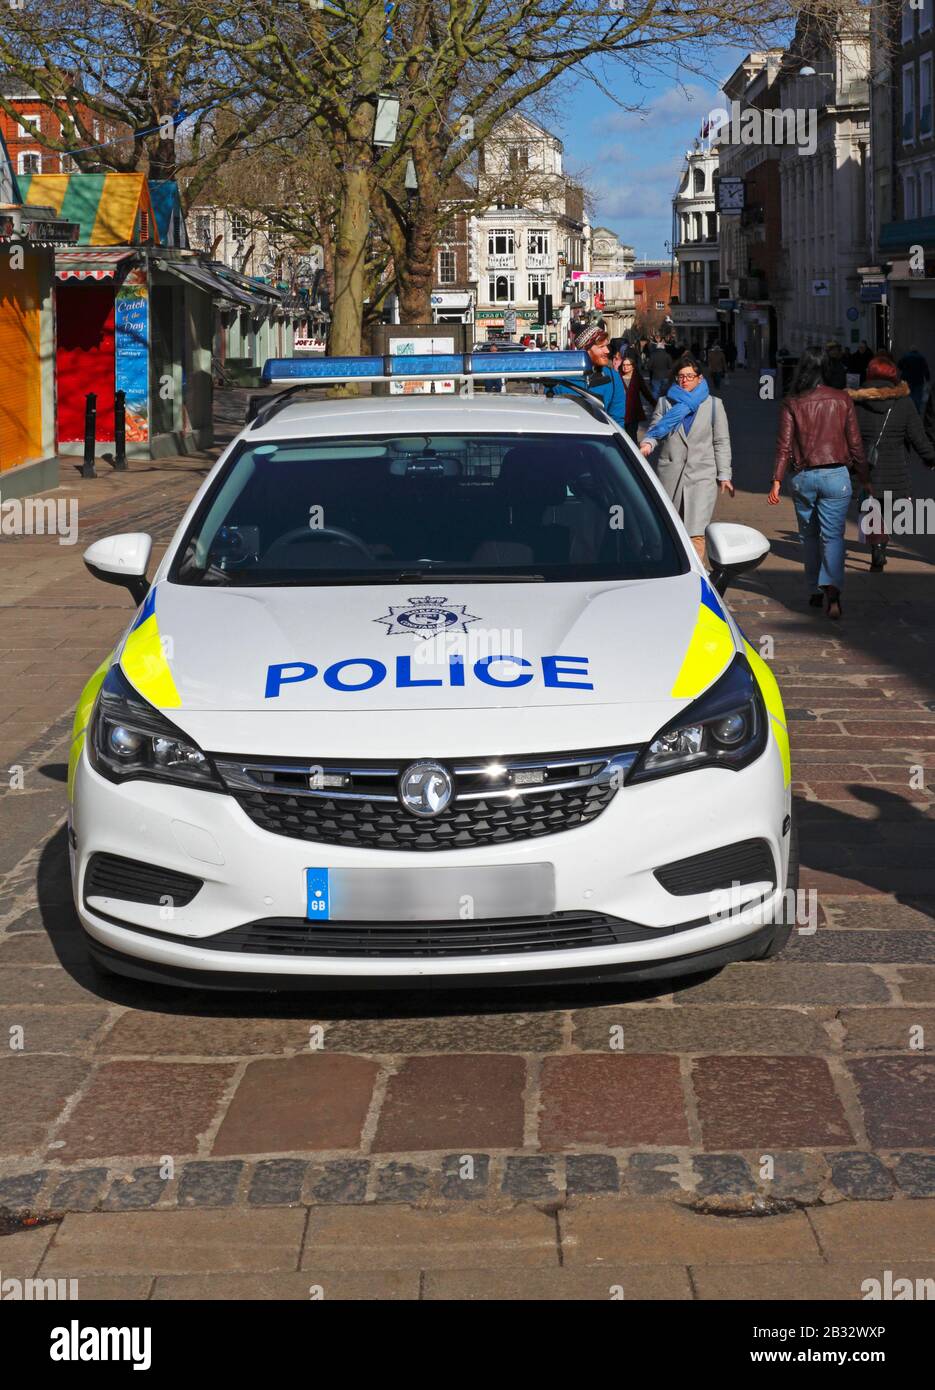 Vue sur une voiture de police garée dans le centre-ville de Norwich à Norwich, Norfolk, Angleterre, Royaume-Uni, Europe. Banque D'Images